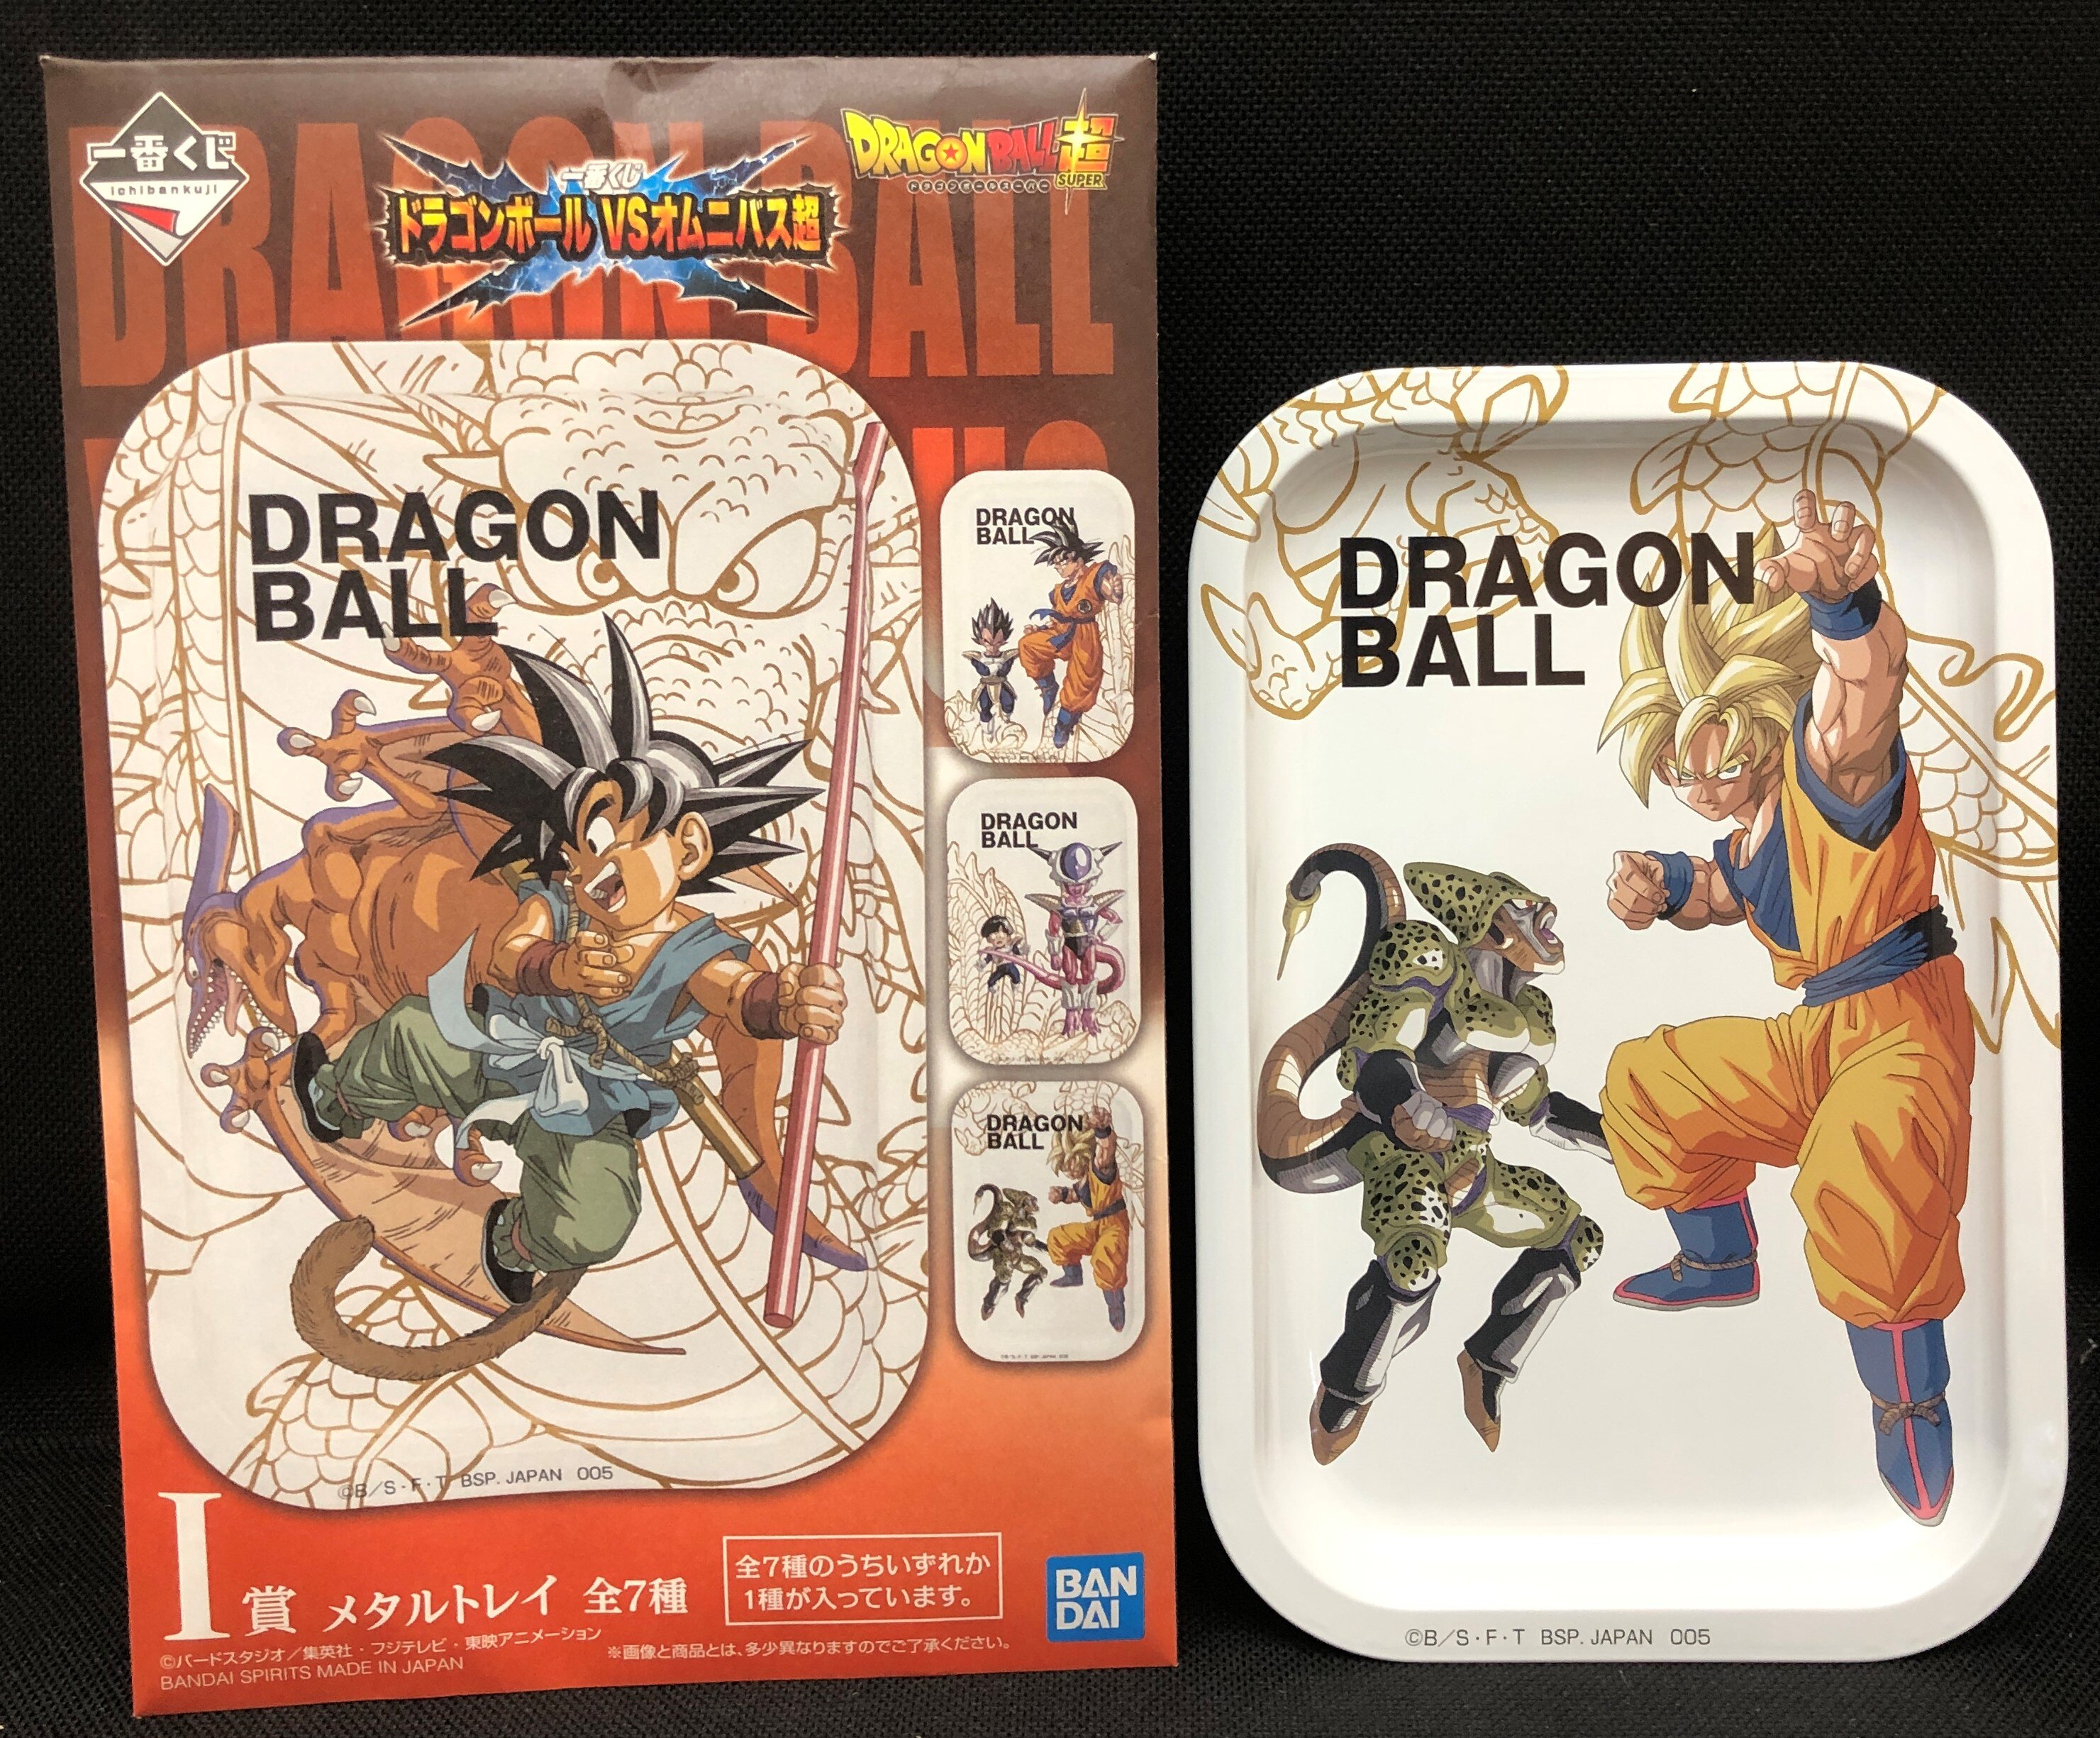 Dragon Ball Ichiban Kuji Saiyan G Award glass 4 set BANPRESTO From JAPAN